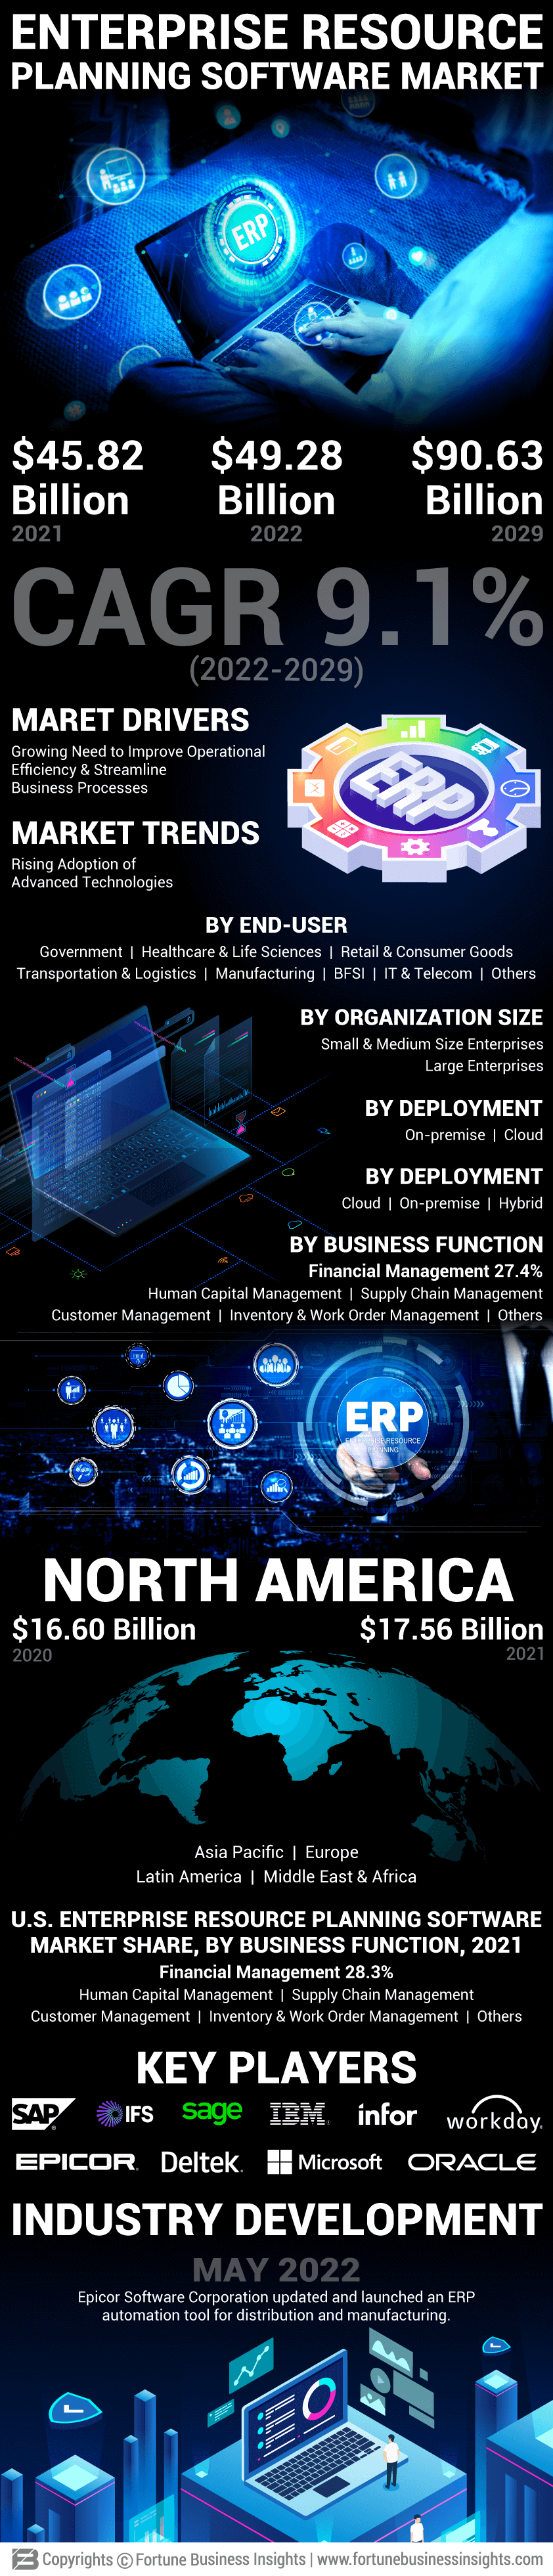 企业资源计划(ERP)软件市场